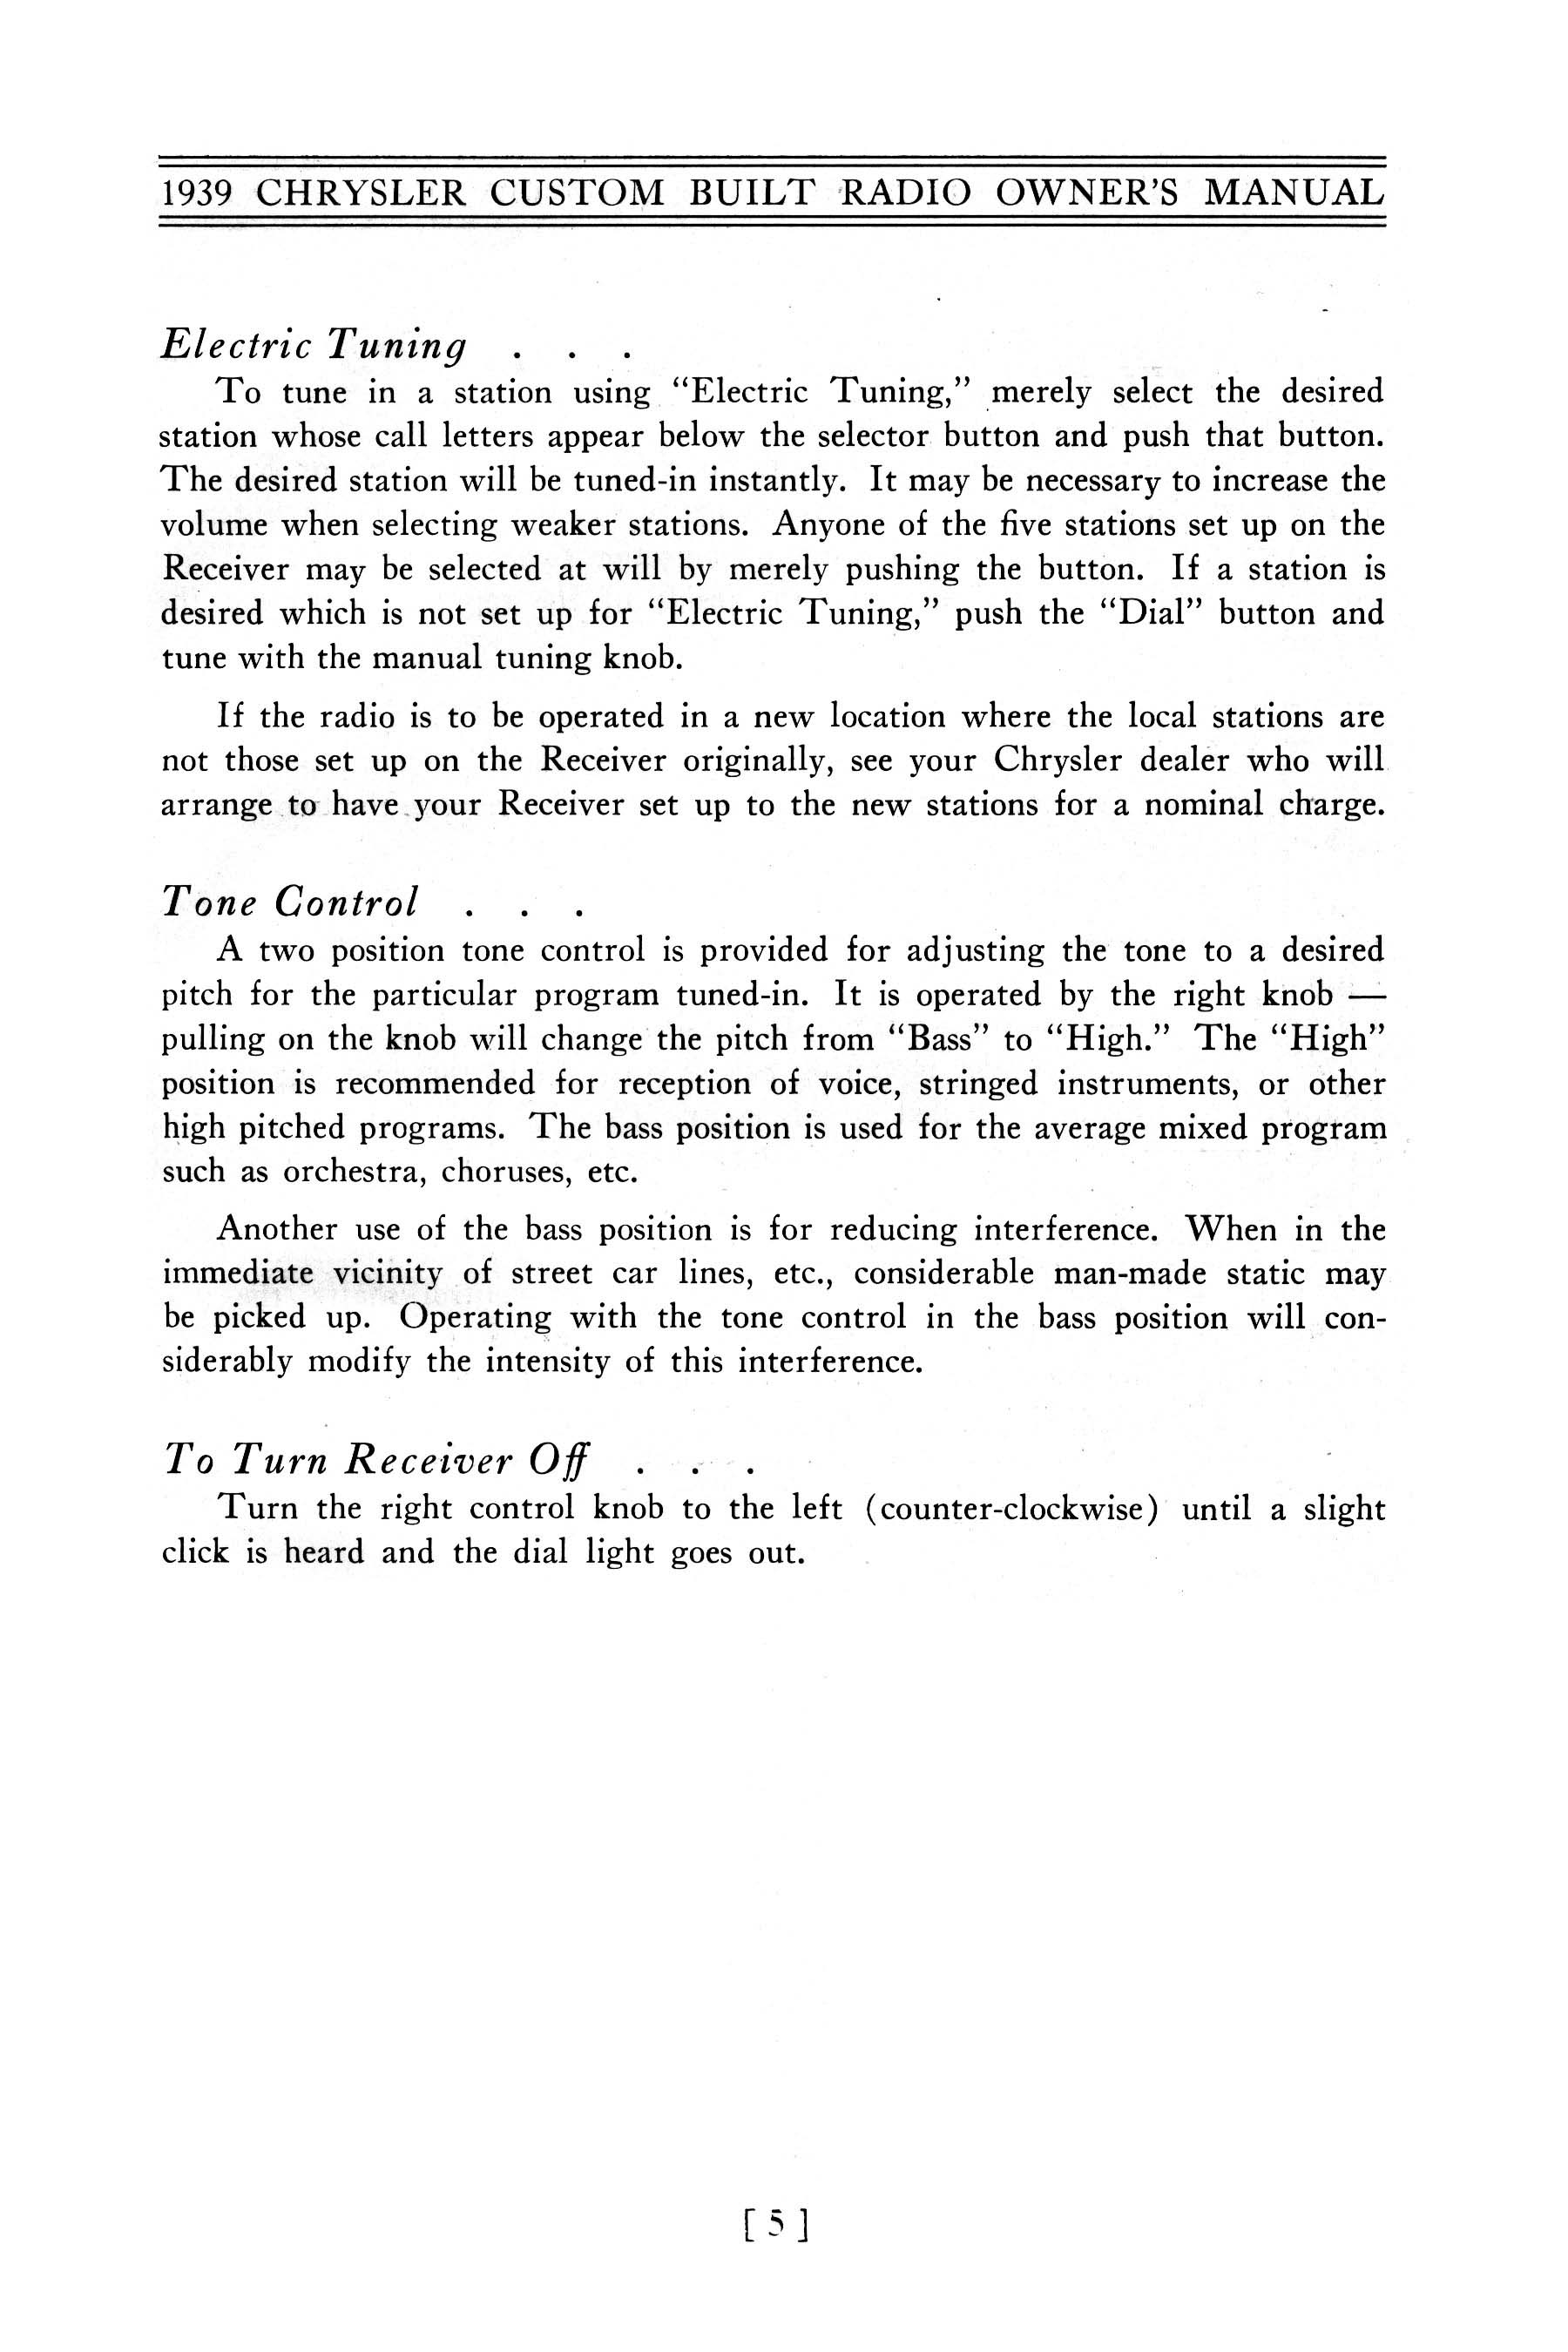 1939_Chrysler_Radio_Manual-05